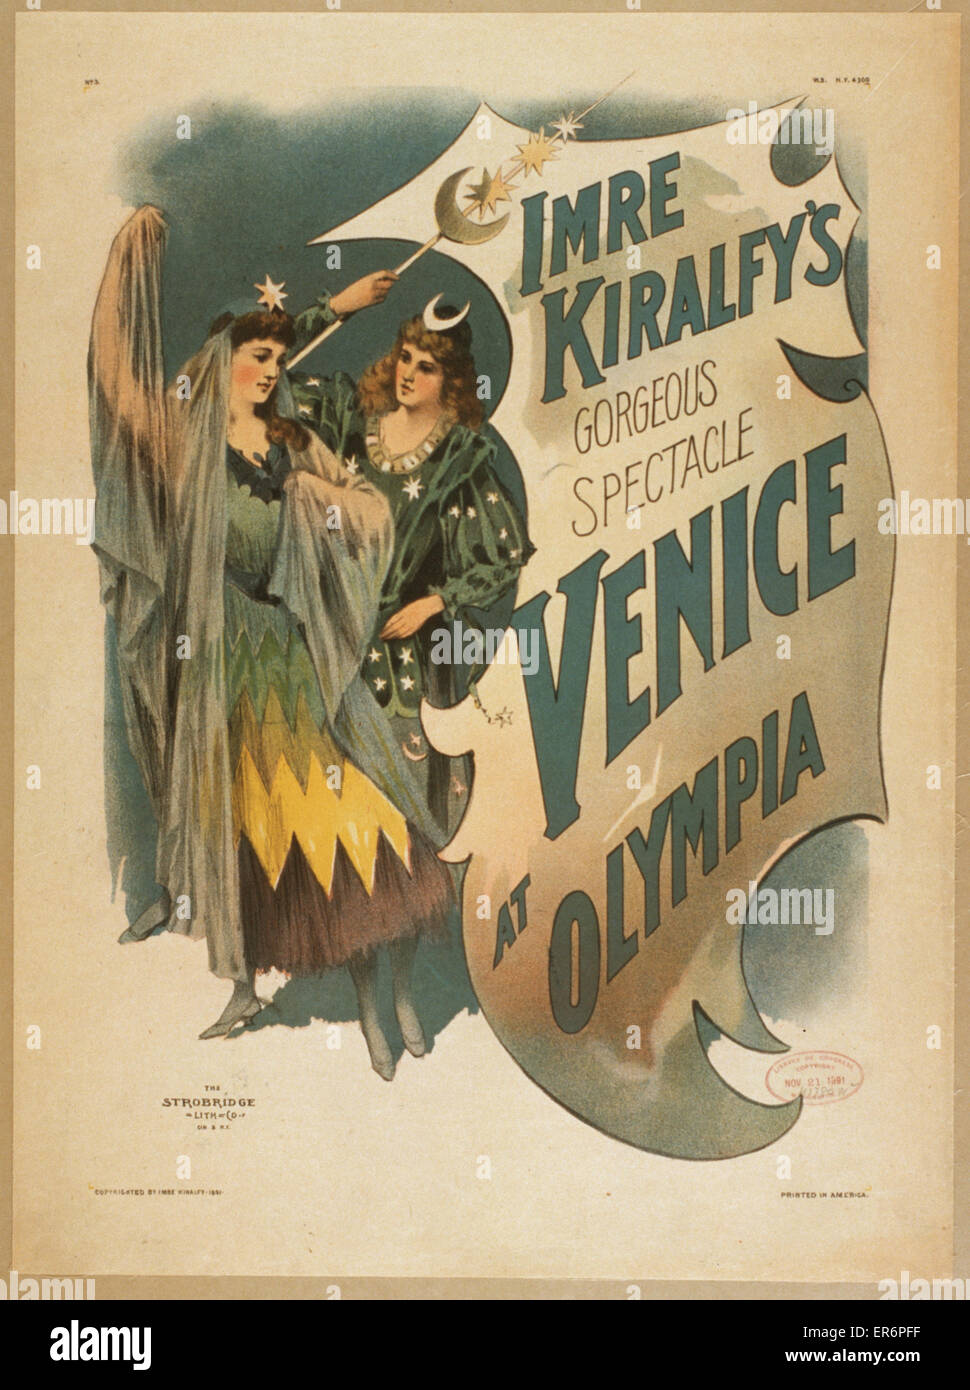 Imre Kiralfy est magnifique spectacle, Venise à Olympie. Date c1891. Banque D'Images